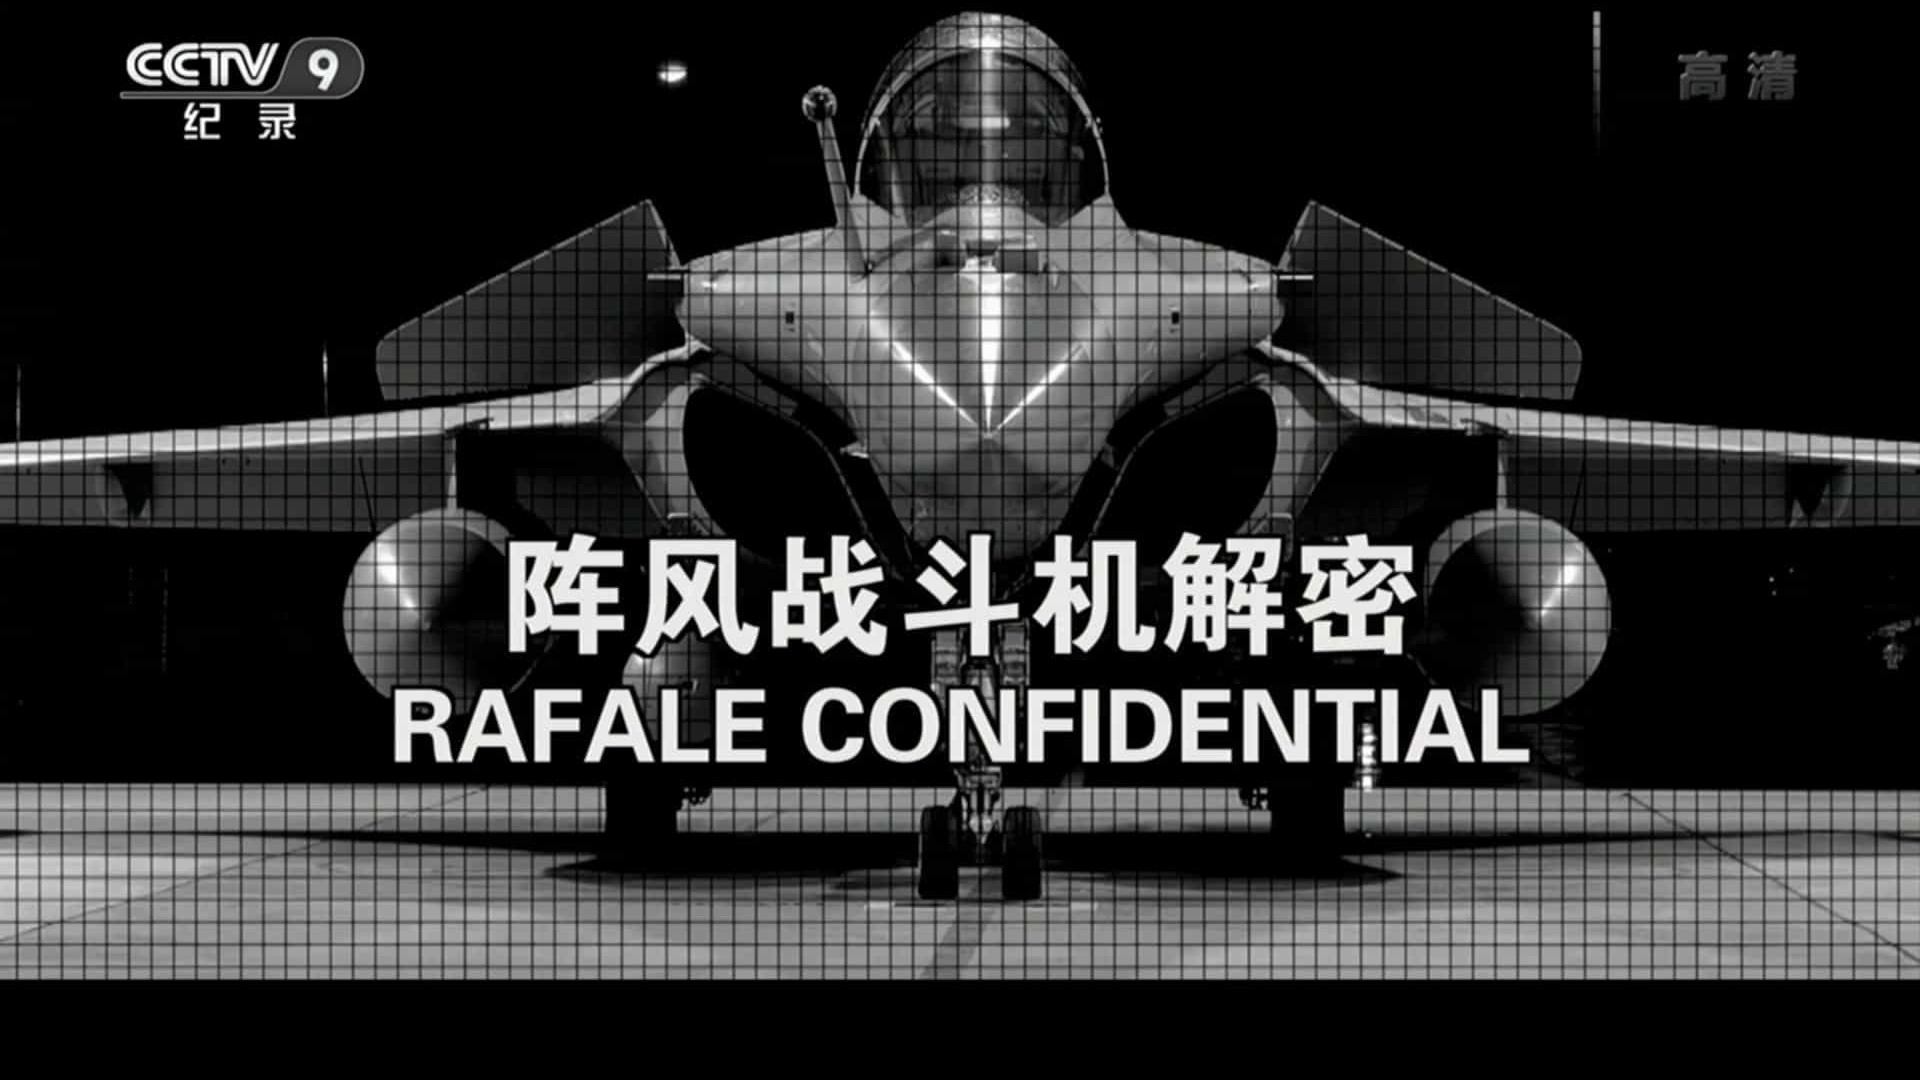 法国纪录片《阵风战斗机解密 Rafale Confidential 2016》汉语中字 央视翻译版纪录片